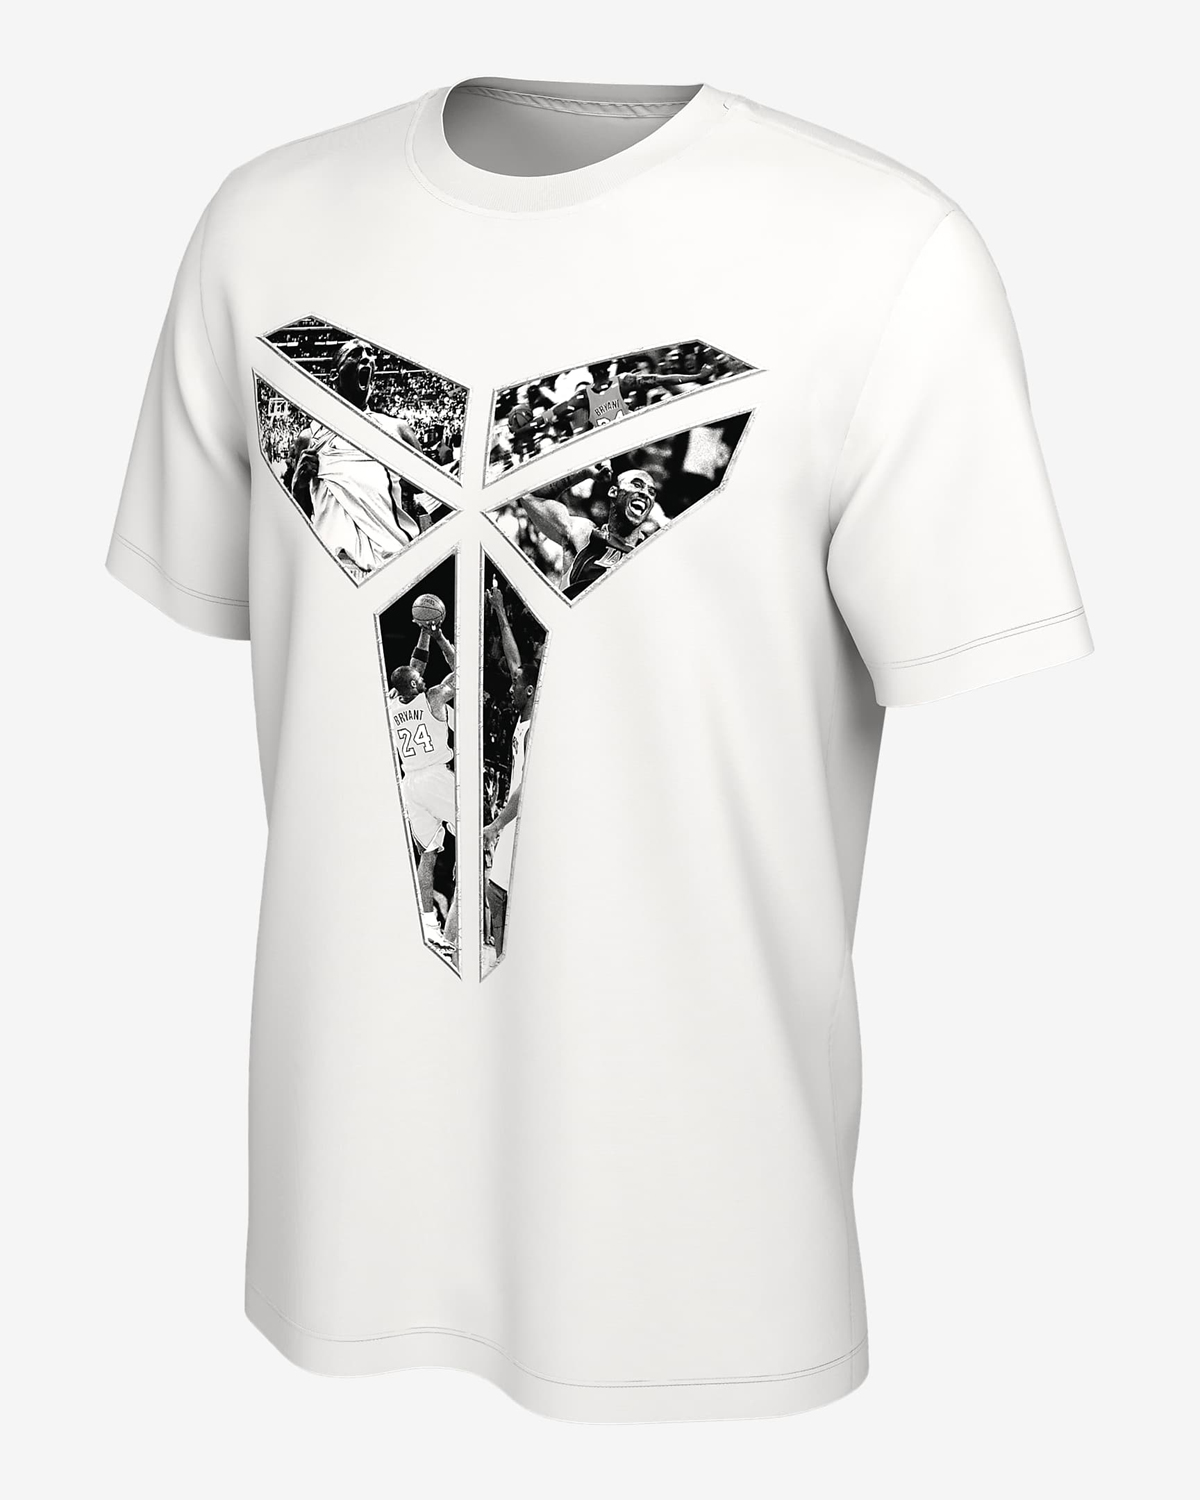 Nike Kobe T Shirt White 1